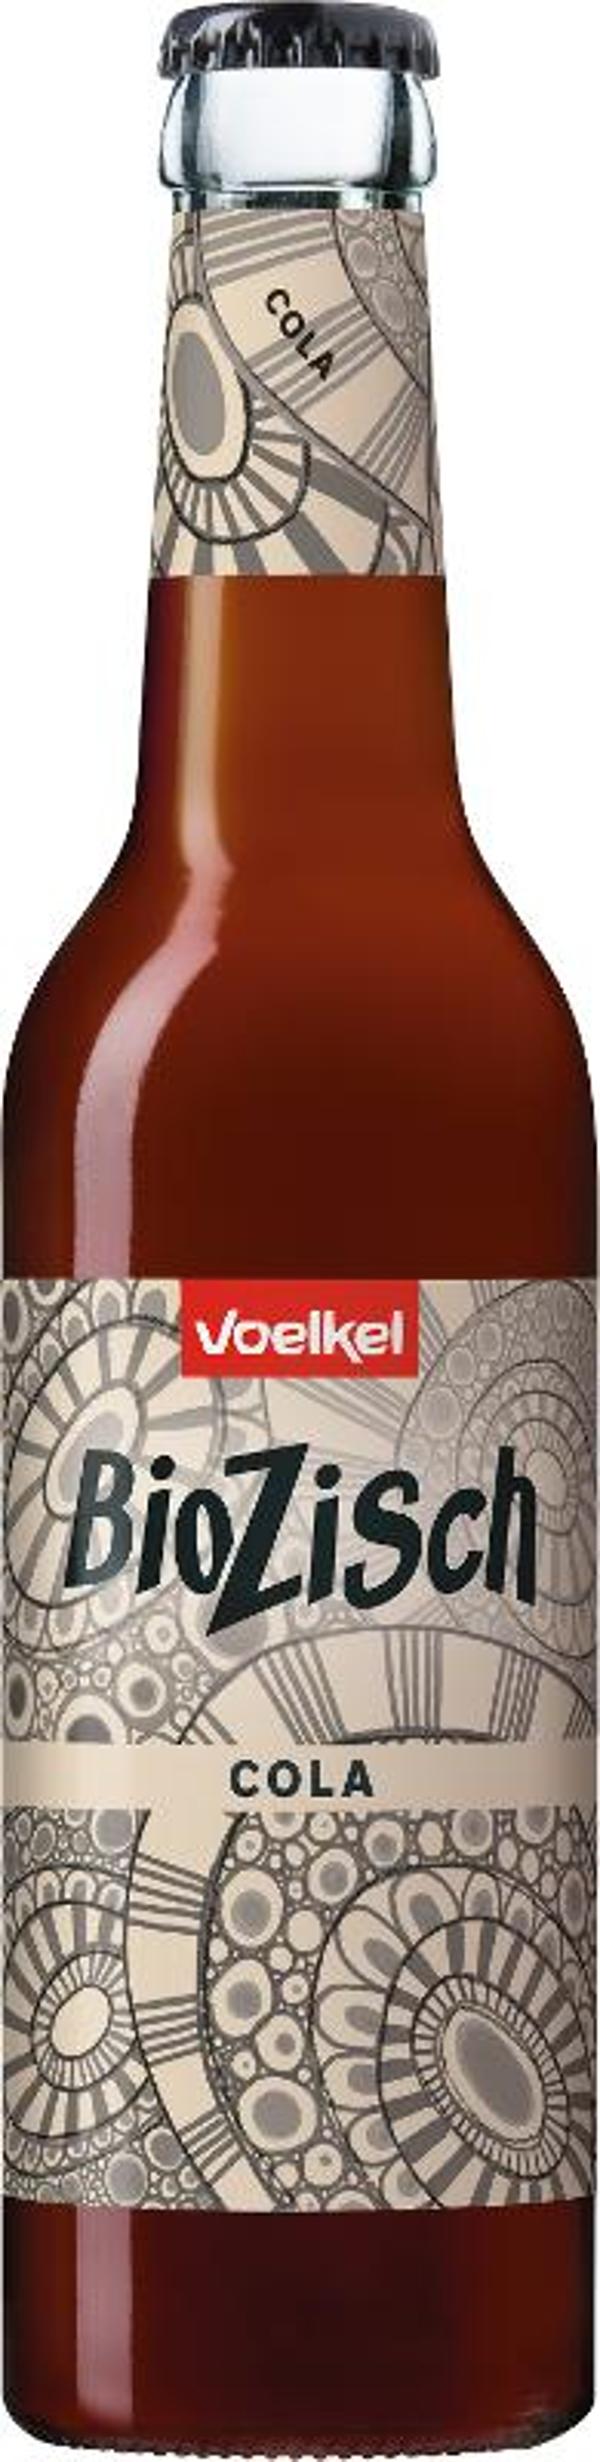 Produktfoto zu Kiste BioZisch Cola 12*0,33l